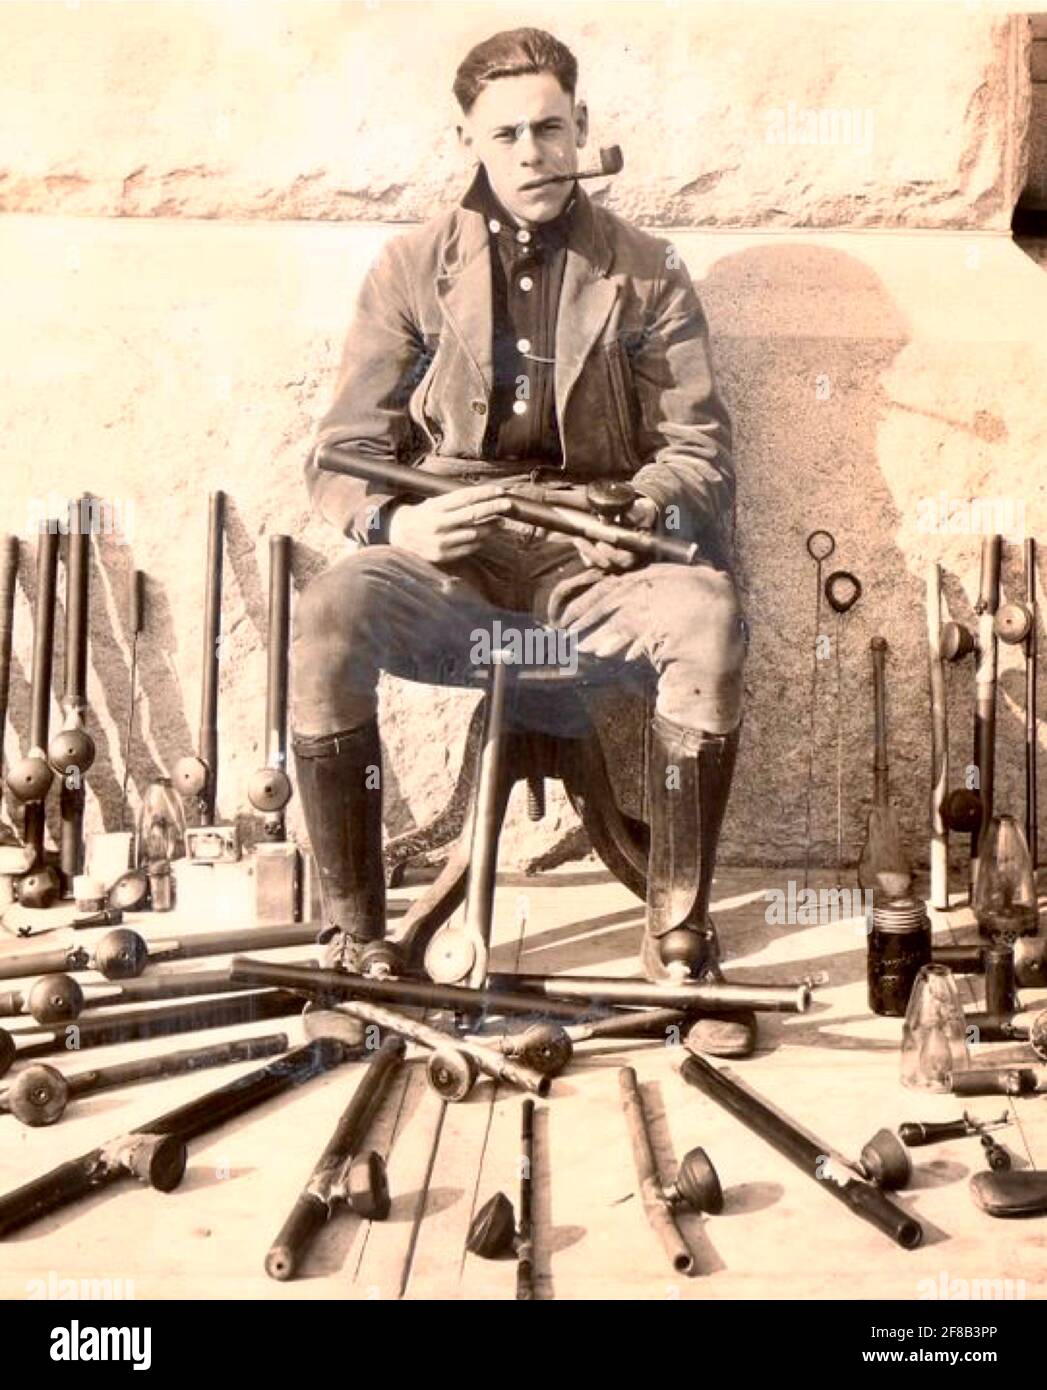 Polizist posiert mit Opiumrohren, Lampen und anderen Utensilien, die bei den Opium-Razzien in San Francisco Anfang des 20. Jahrhunderts konfisziert wurden Stockfoto